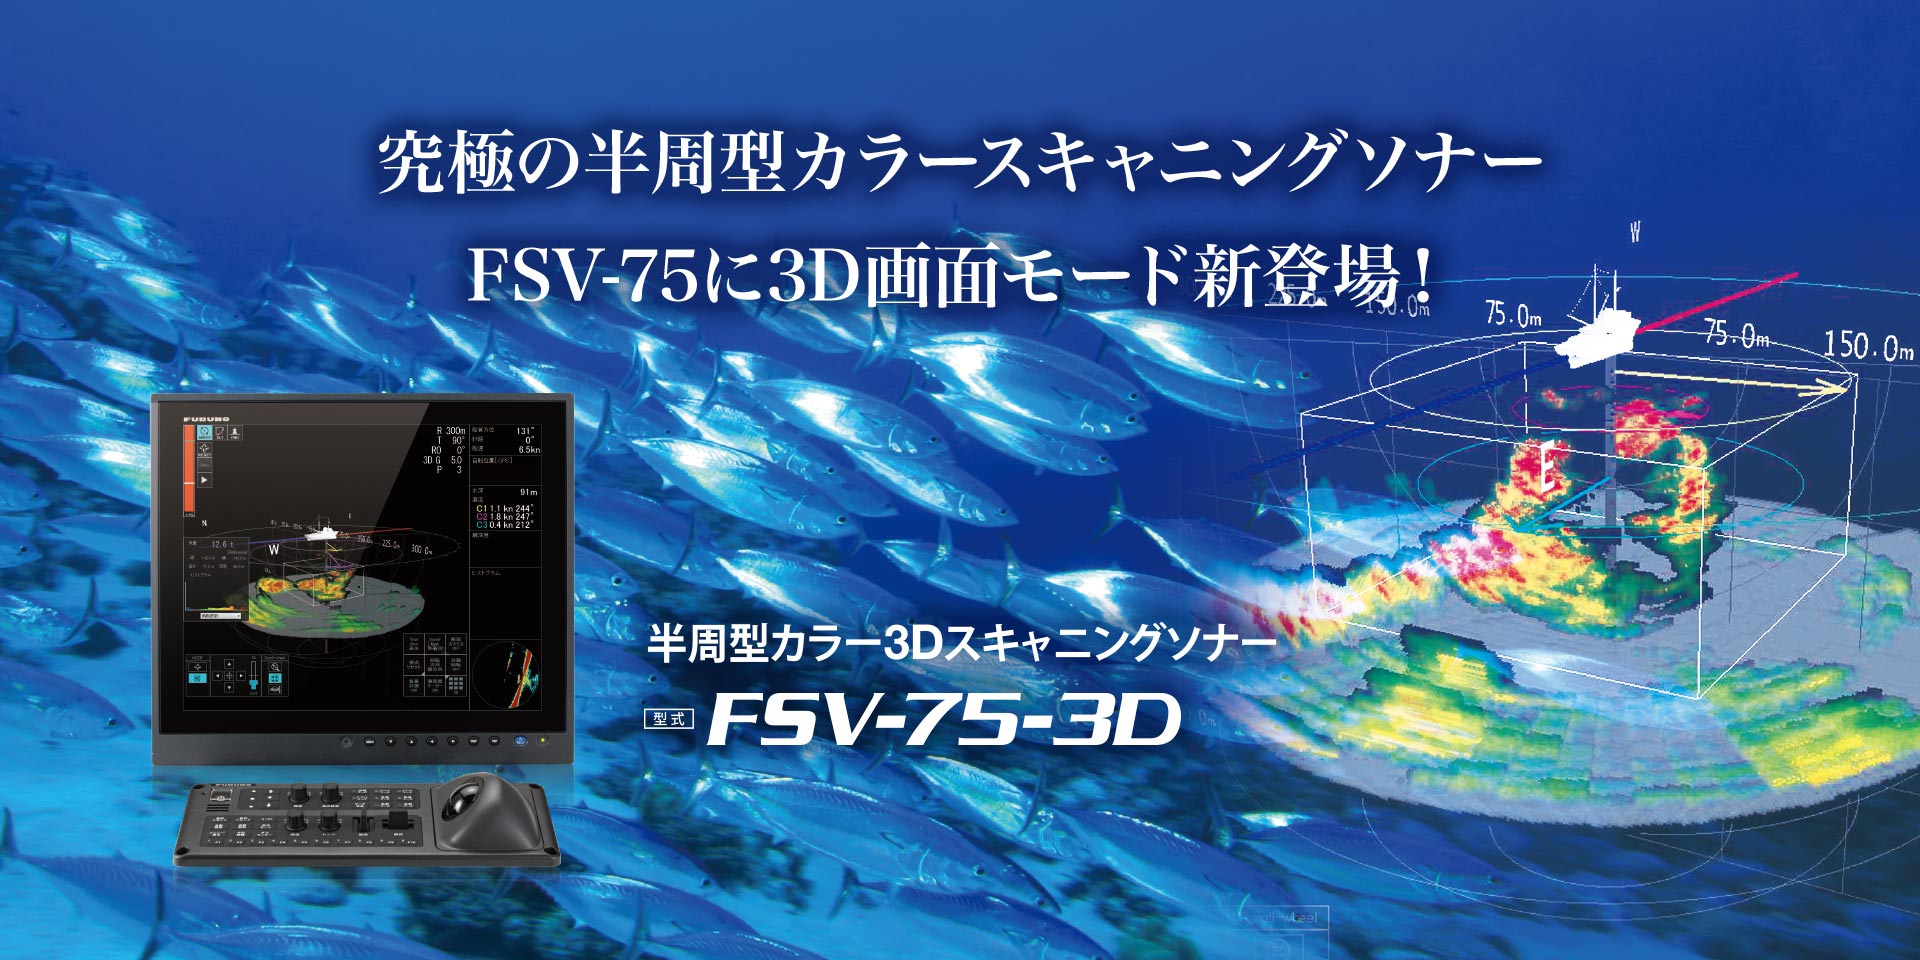 FSV-75-3D